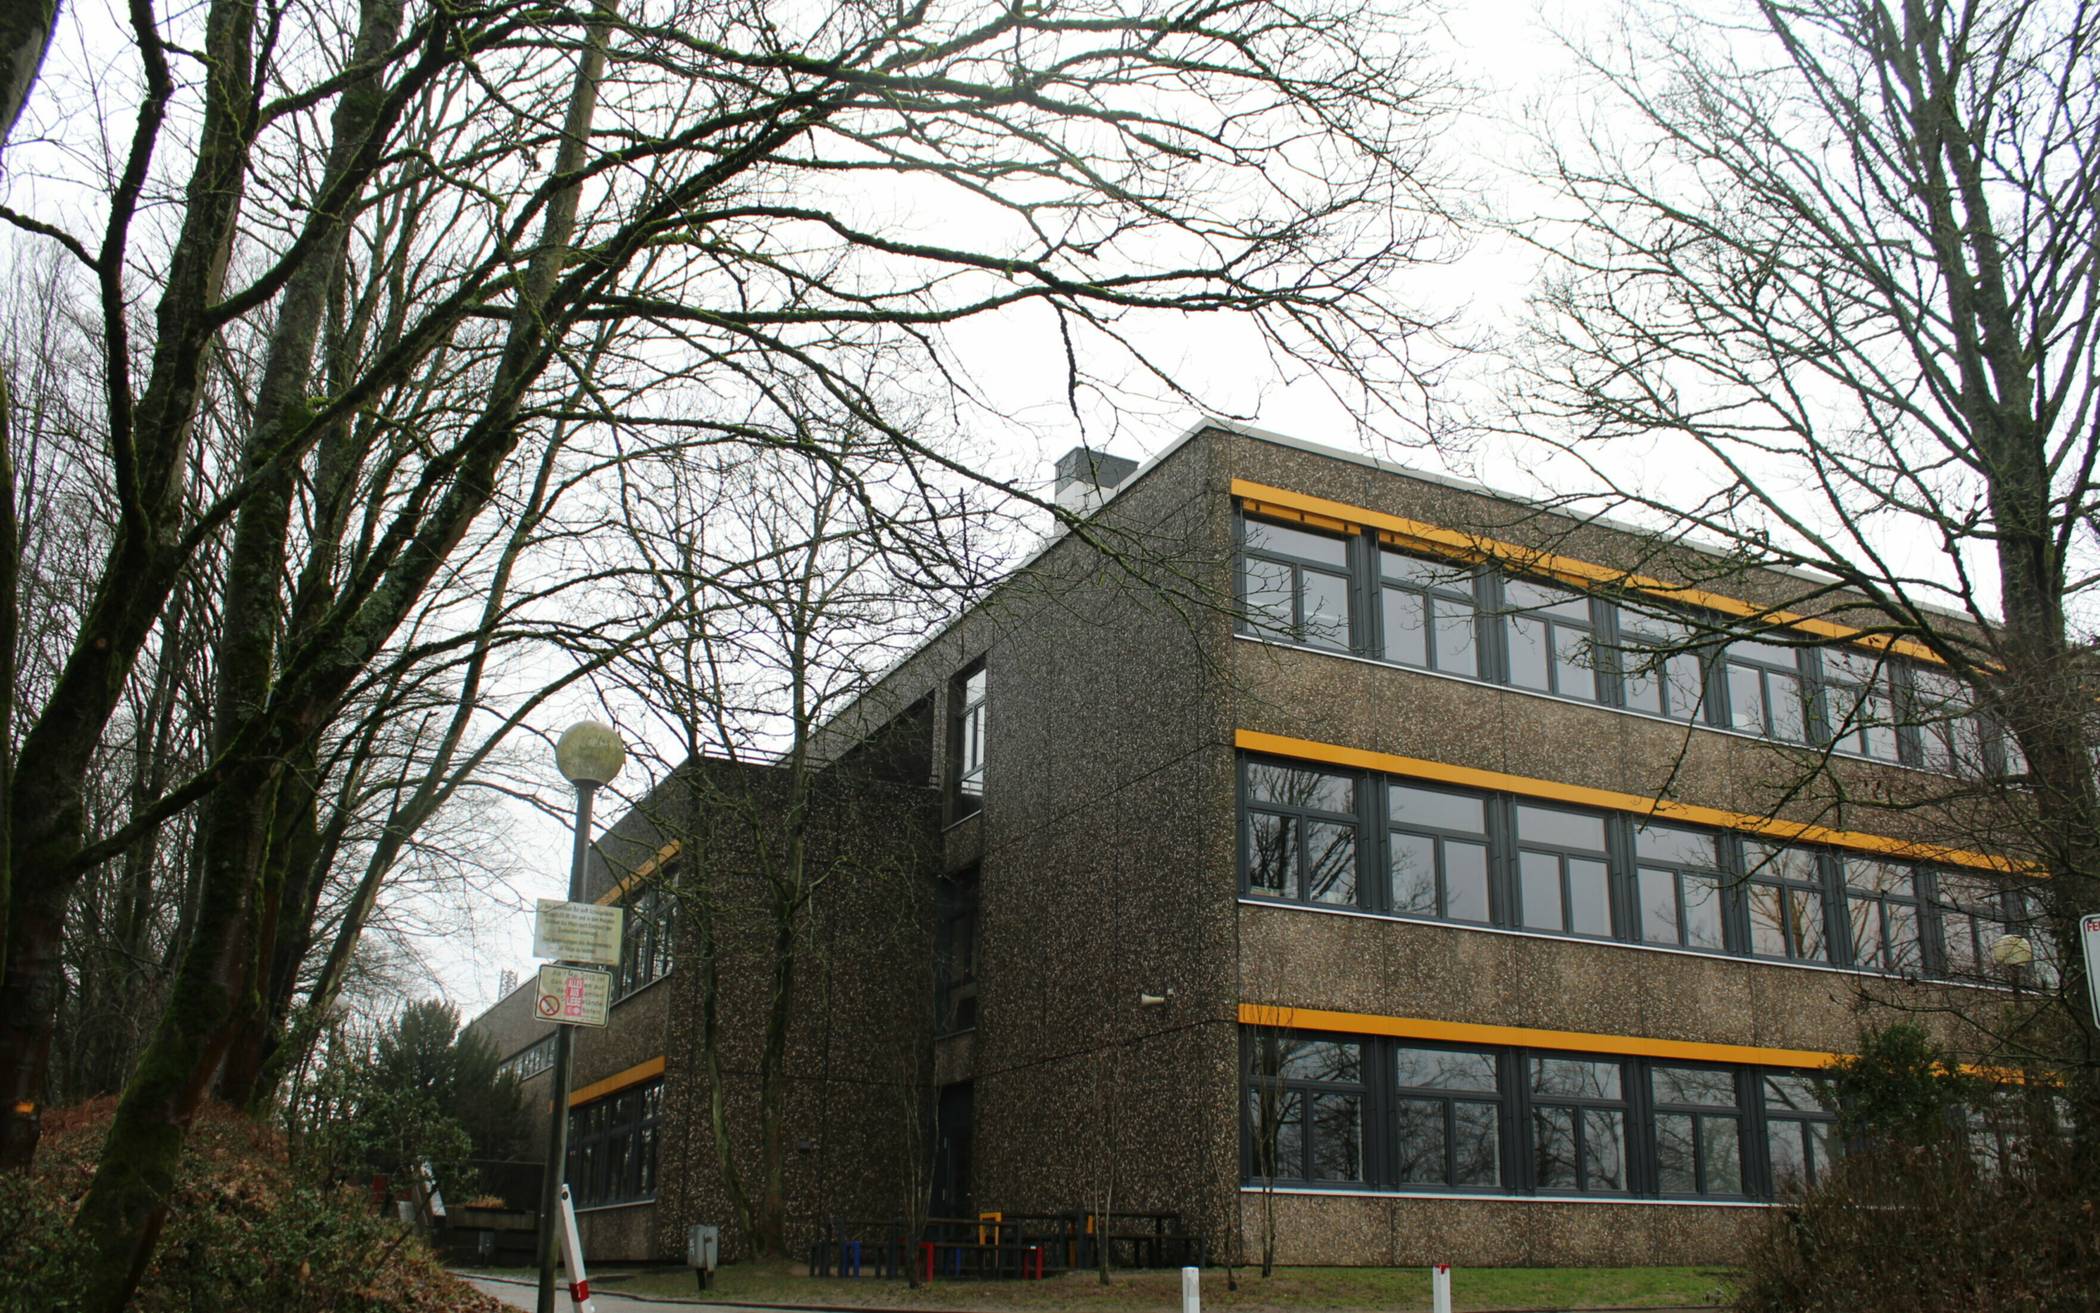  Das HHG ist die weiterführende Schule mit den höchsten Anmeldezahlen in Mettmann. 